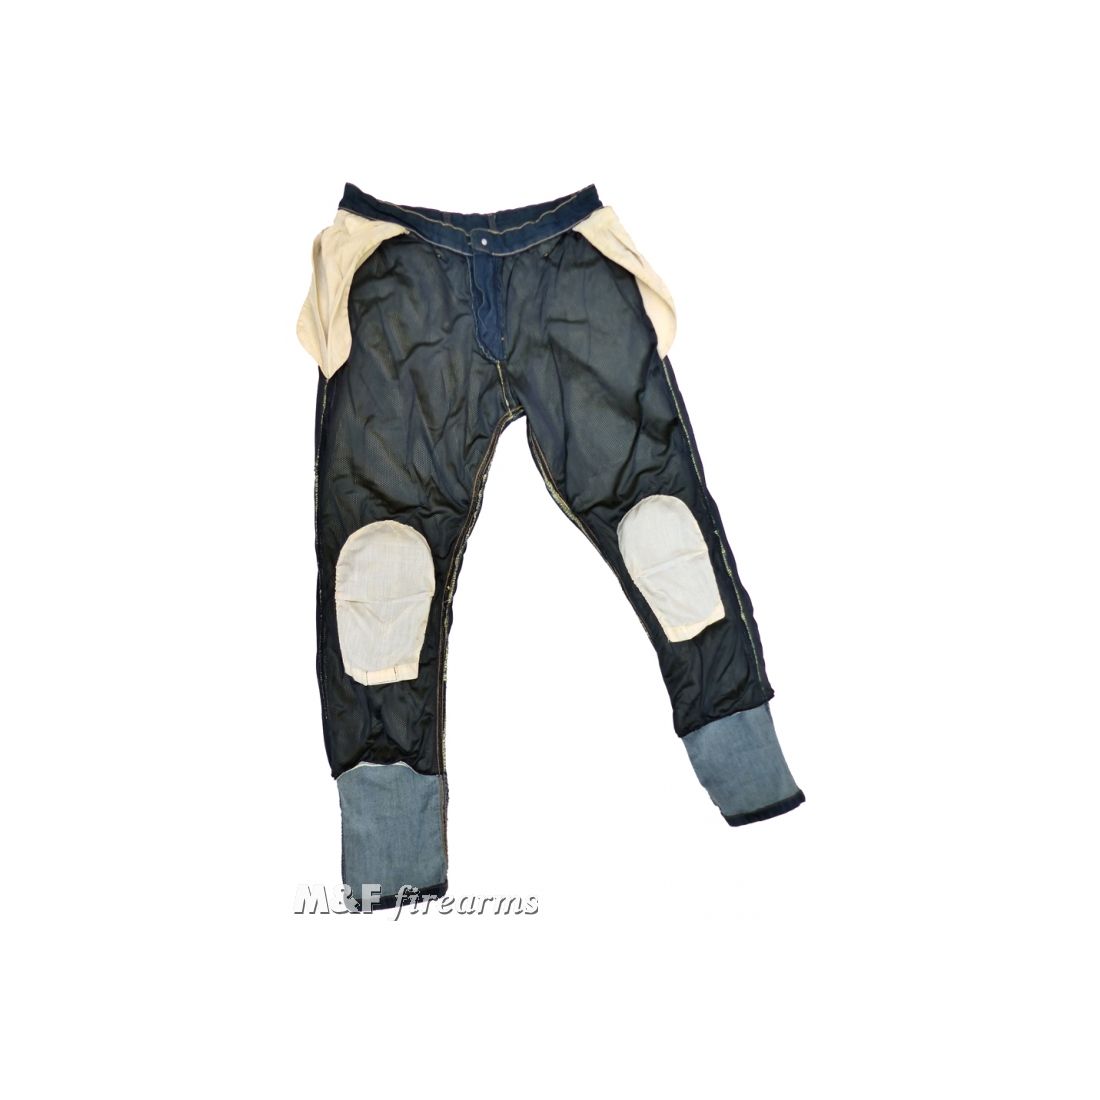 Herren Road- Jeans "Stonewashed" in Antik- Optik DENIM- Stretch- Gewebe mit Netz- und Aramidfaser- Futter sowie Knieprotektoren